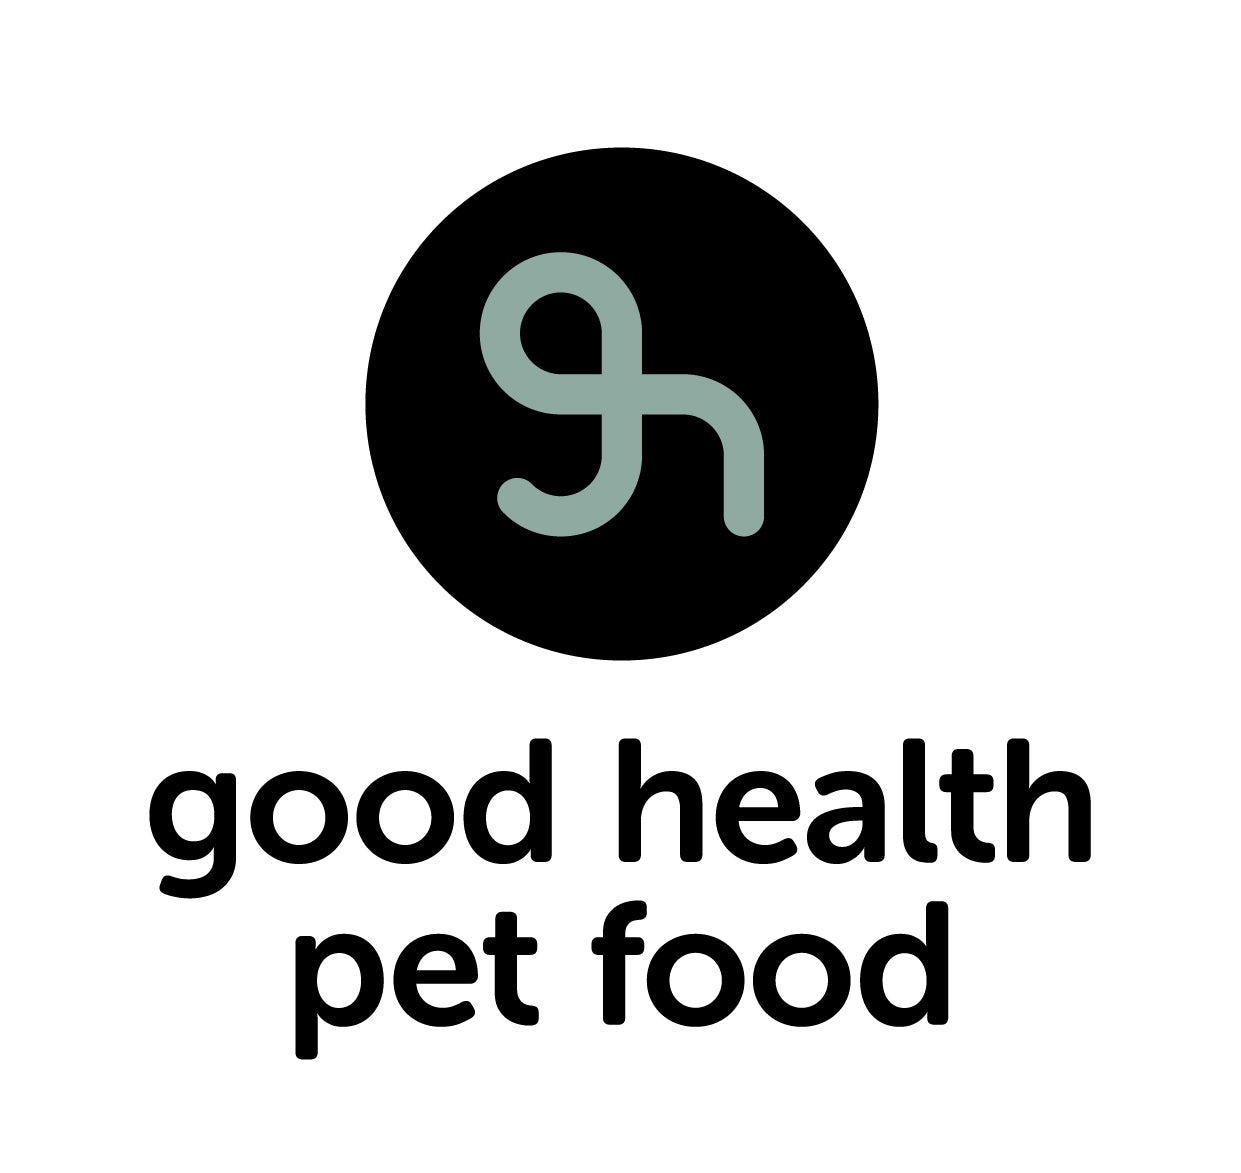 Good Health Dog Flex: Soepele gewrichten en stevige pezen, botten en banden